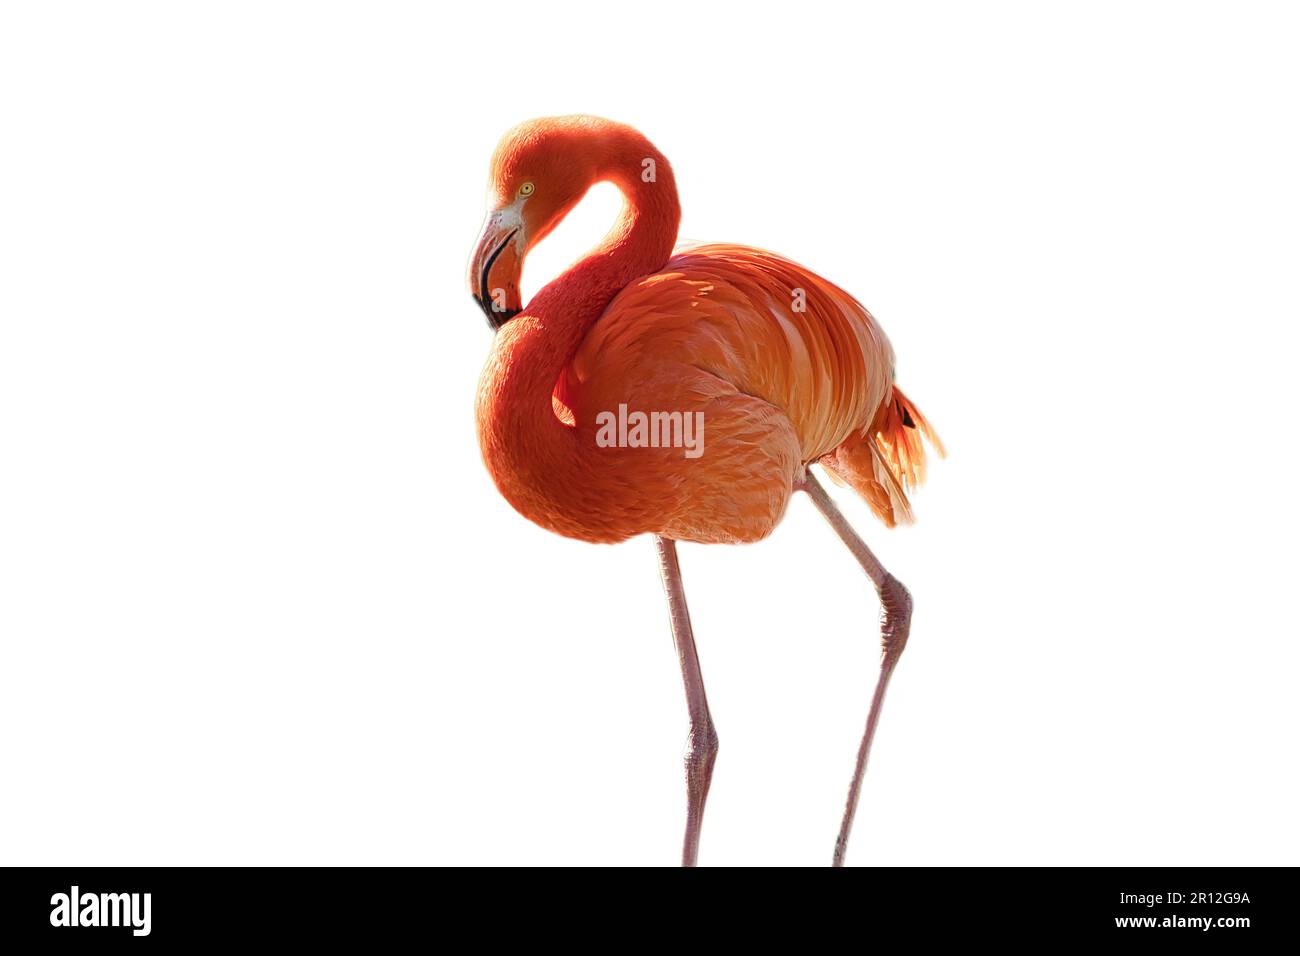 Flamingo, isolé, détaché, à éditer. oiseau rouge rose. Un plumage élégant. Oiseau tropical. simple en position debout Banque D'Images